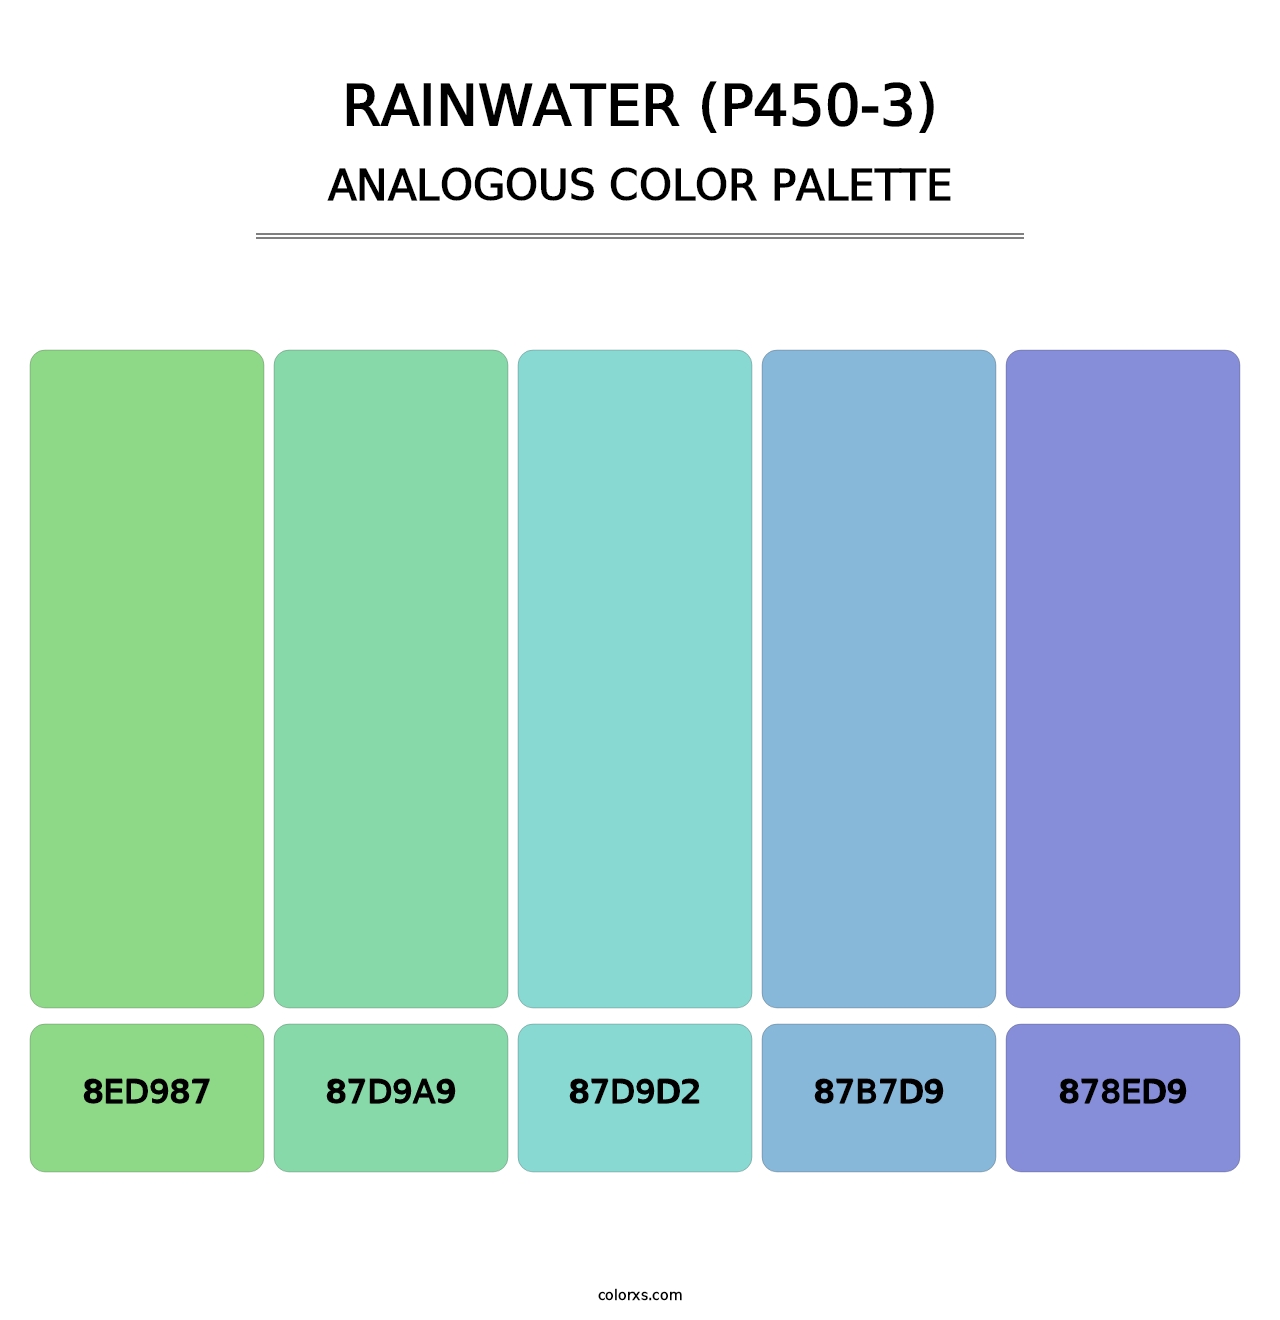 Rainwater (P450-3) - Analogous Color Palette